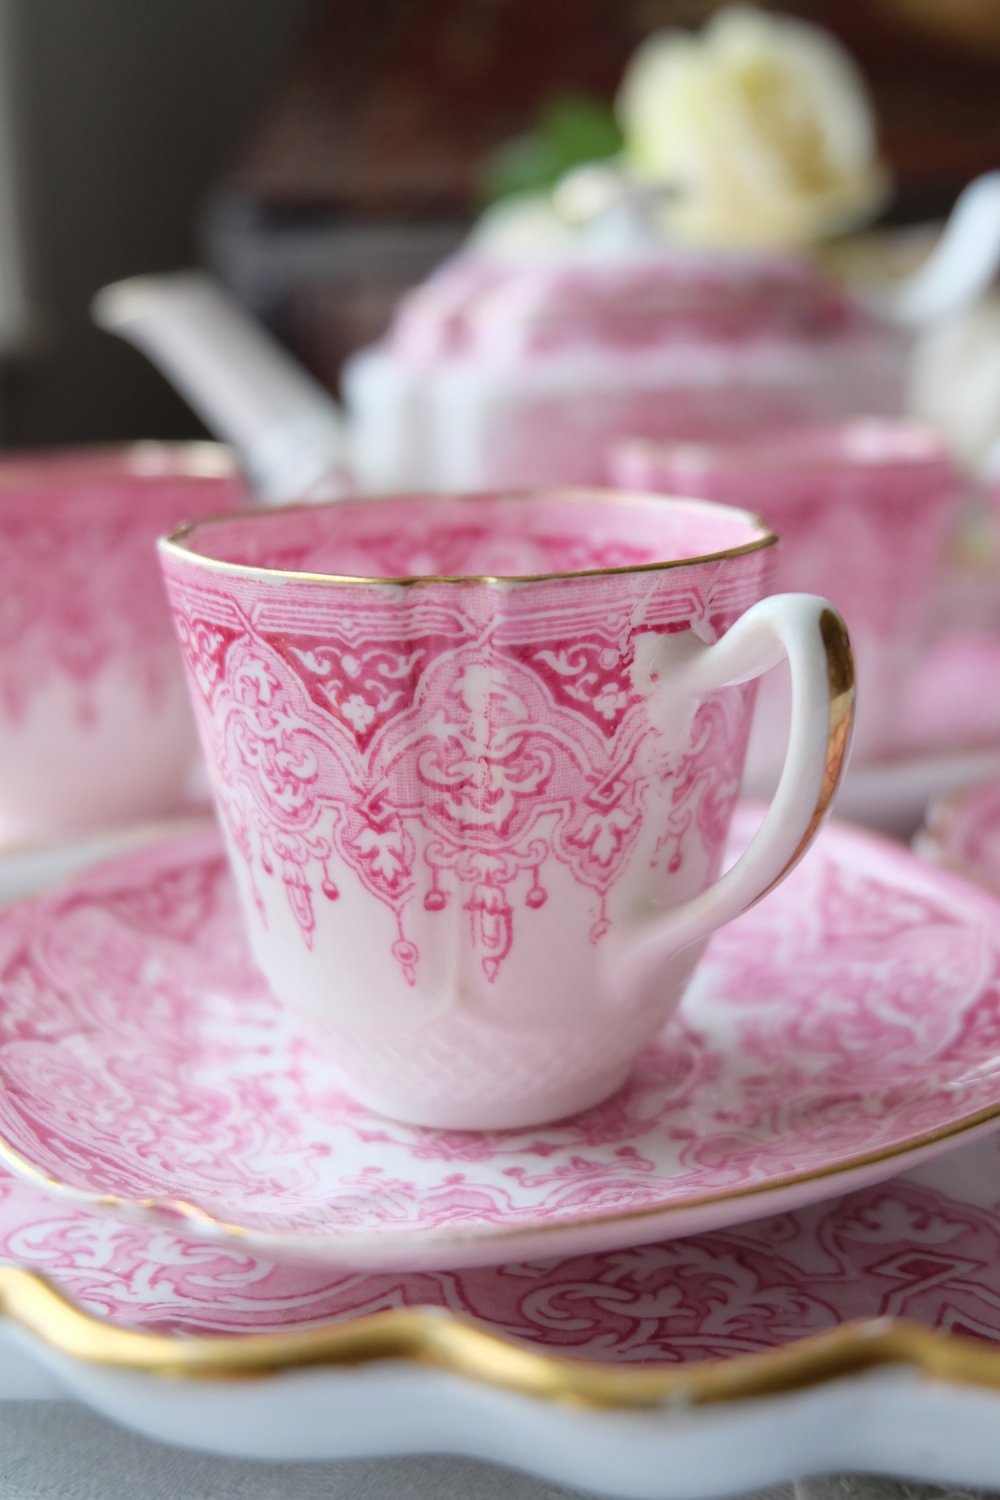 ヴィクトリア時代・コープランド ピンクのゴシックパターンが華やかな 